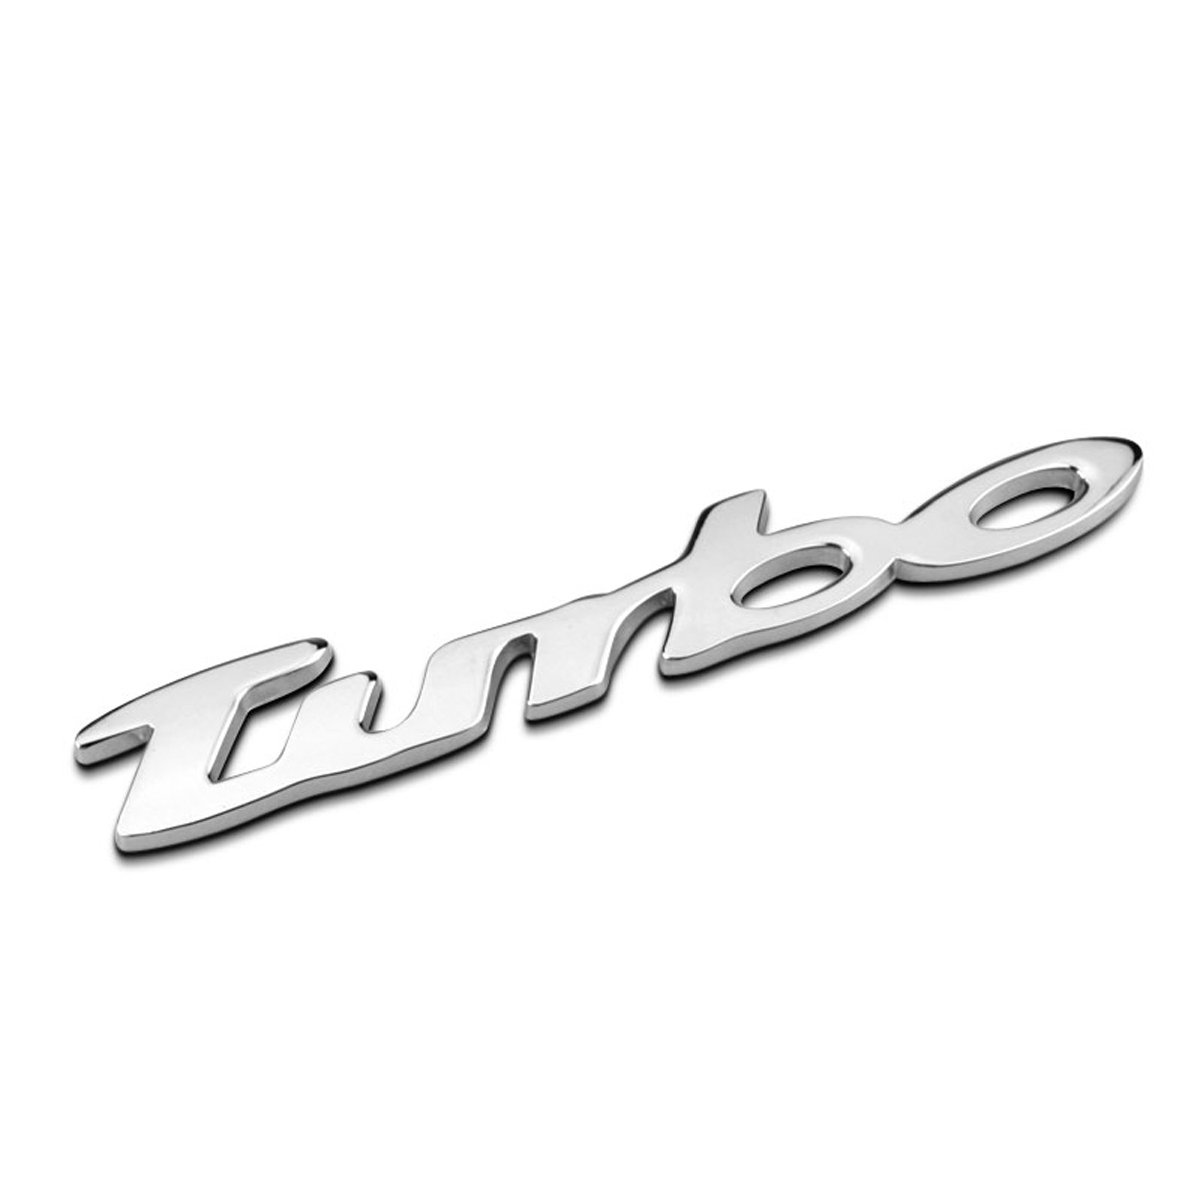 Dsycar 1 Stücke 3D Metall TURBO Auto Seitenfender Kofferraum Emblem Abzeichen Aufkleber für Universal Autos Motorrad Auto Styling Dekorative Zubehör (Silber) von Dsycar